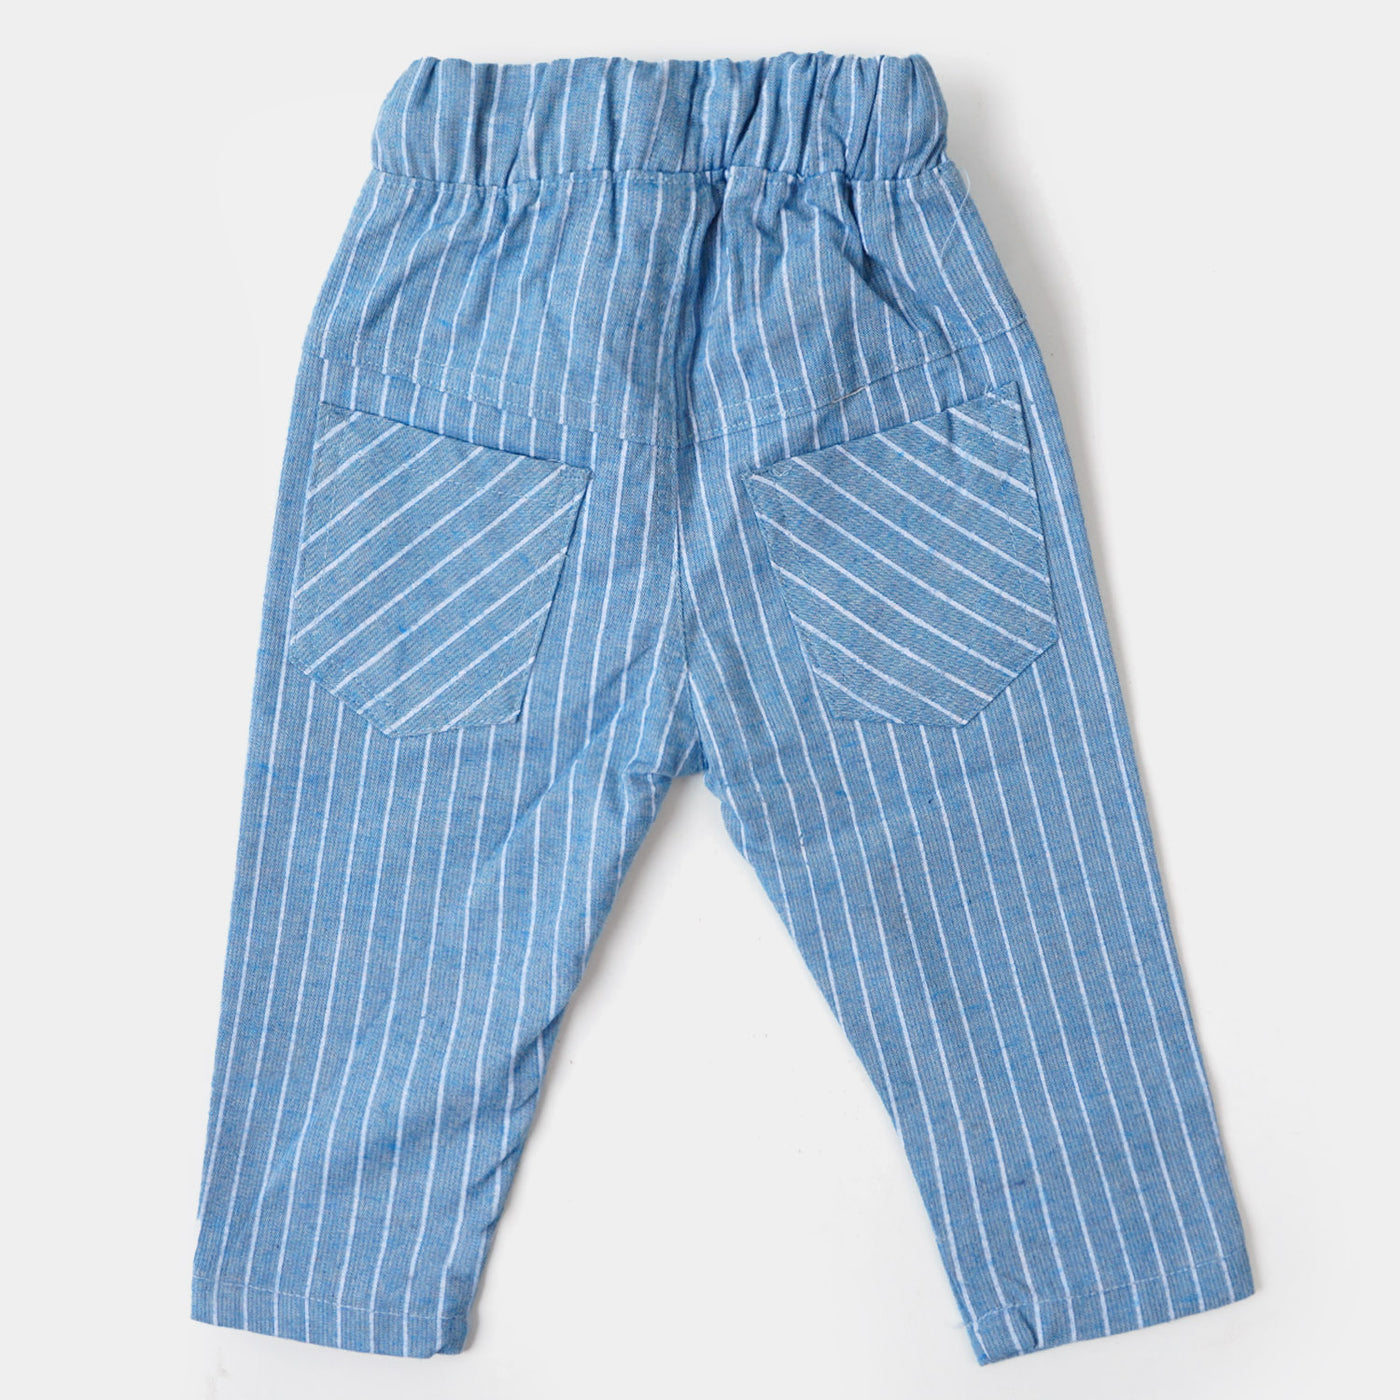 Infant Boys Suit 2 Pcs F22/S2 - Blue/white